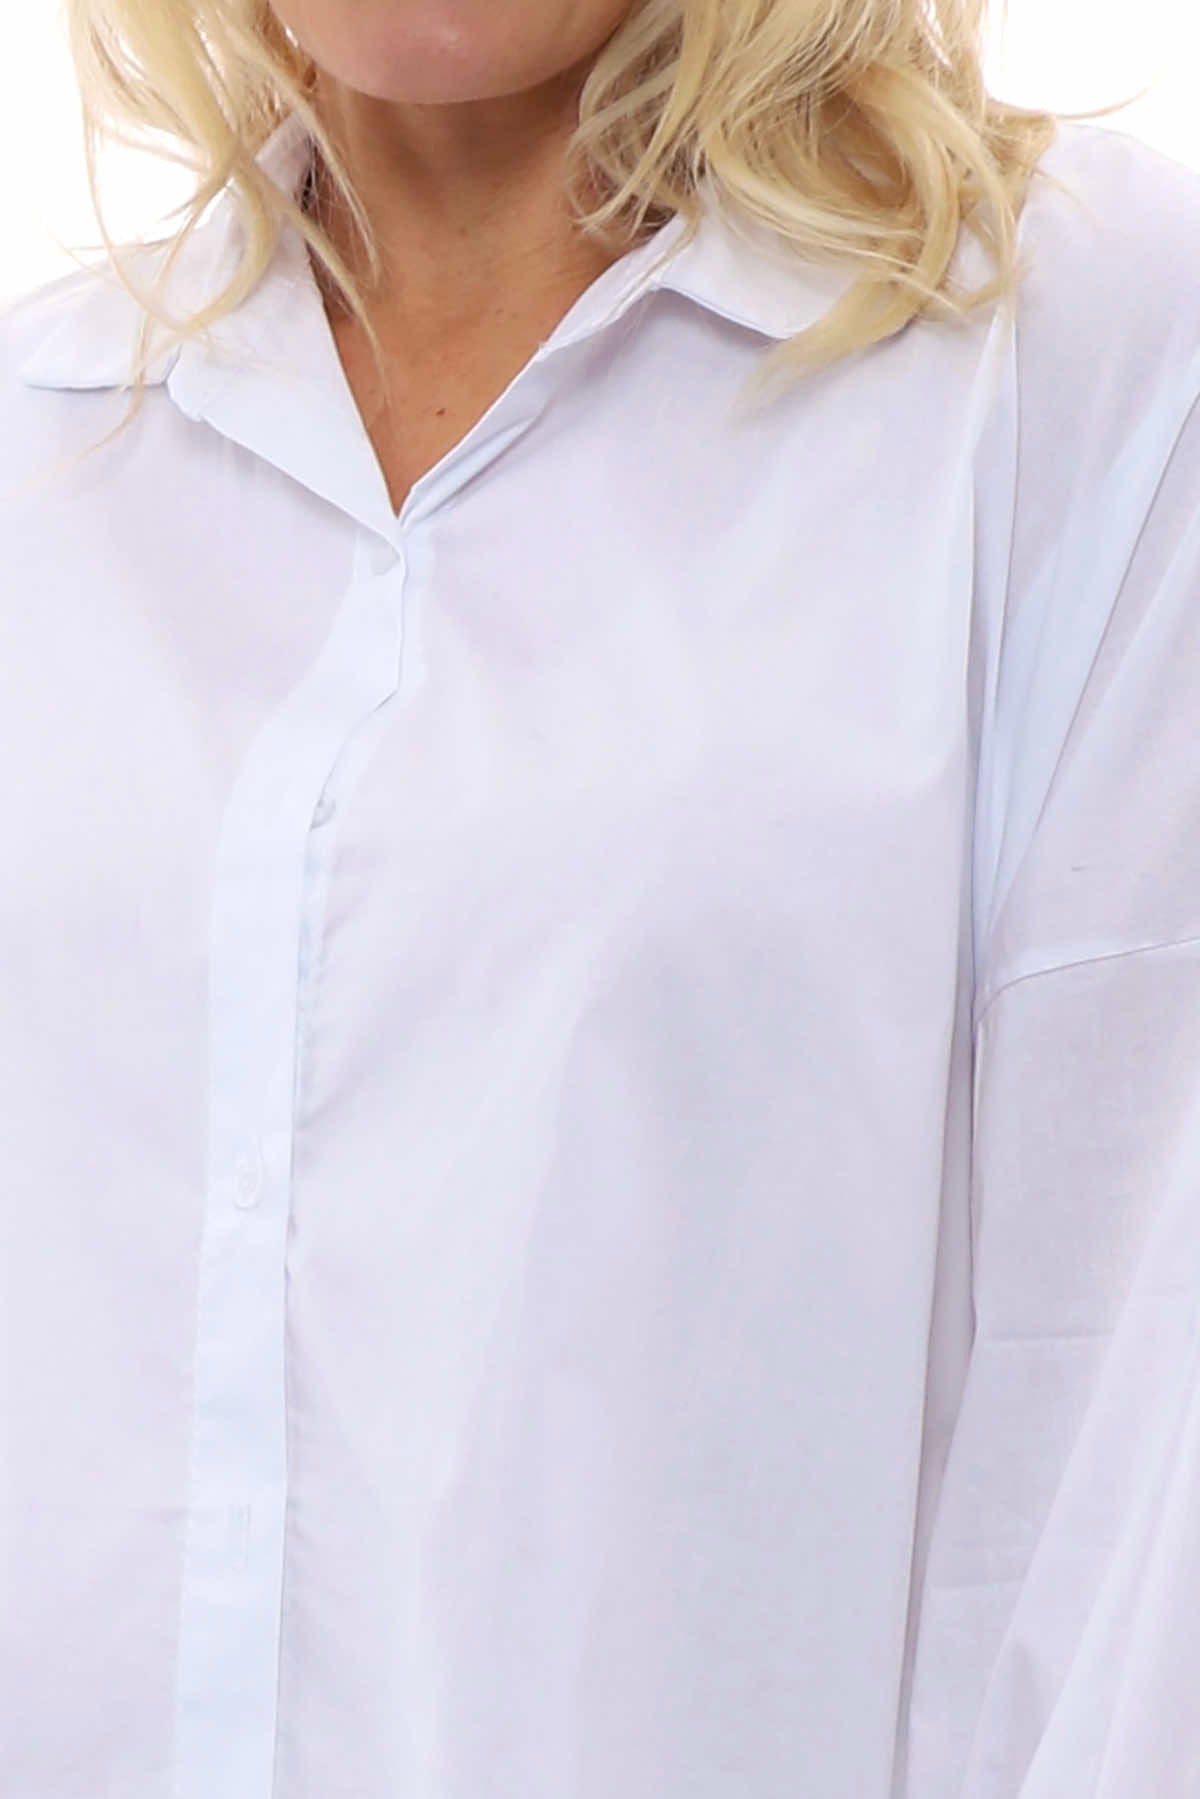 Sonya Cotton Shirt White